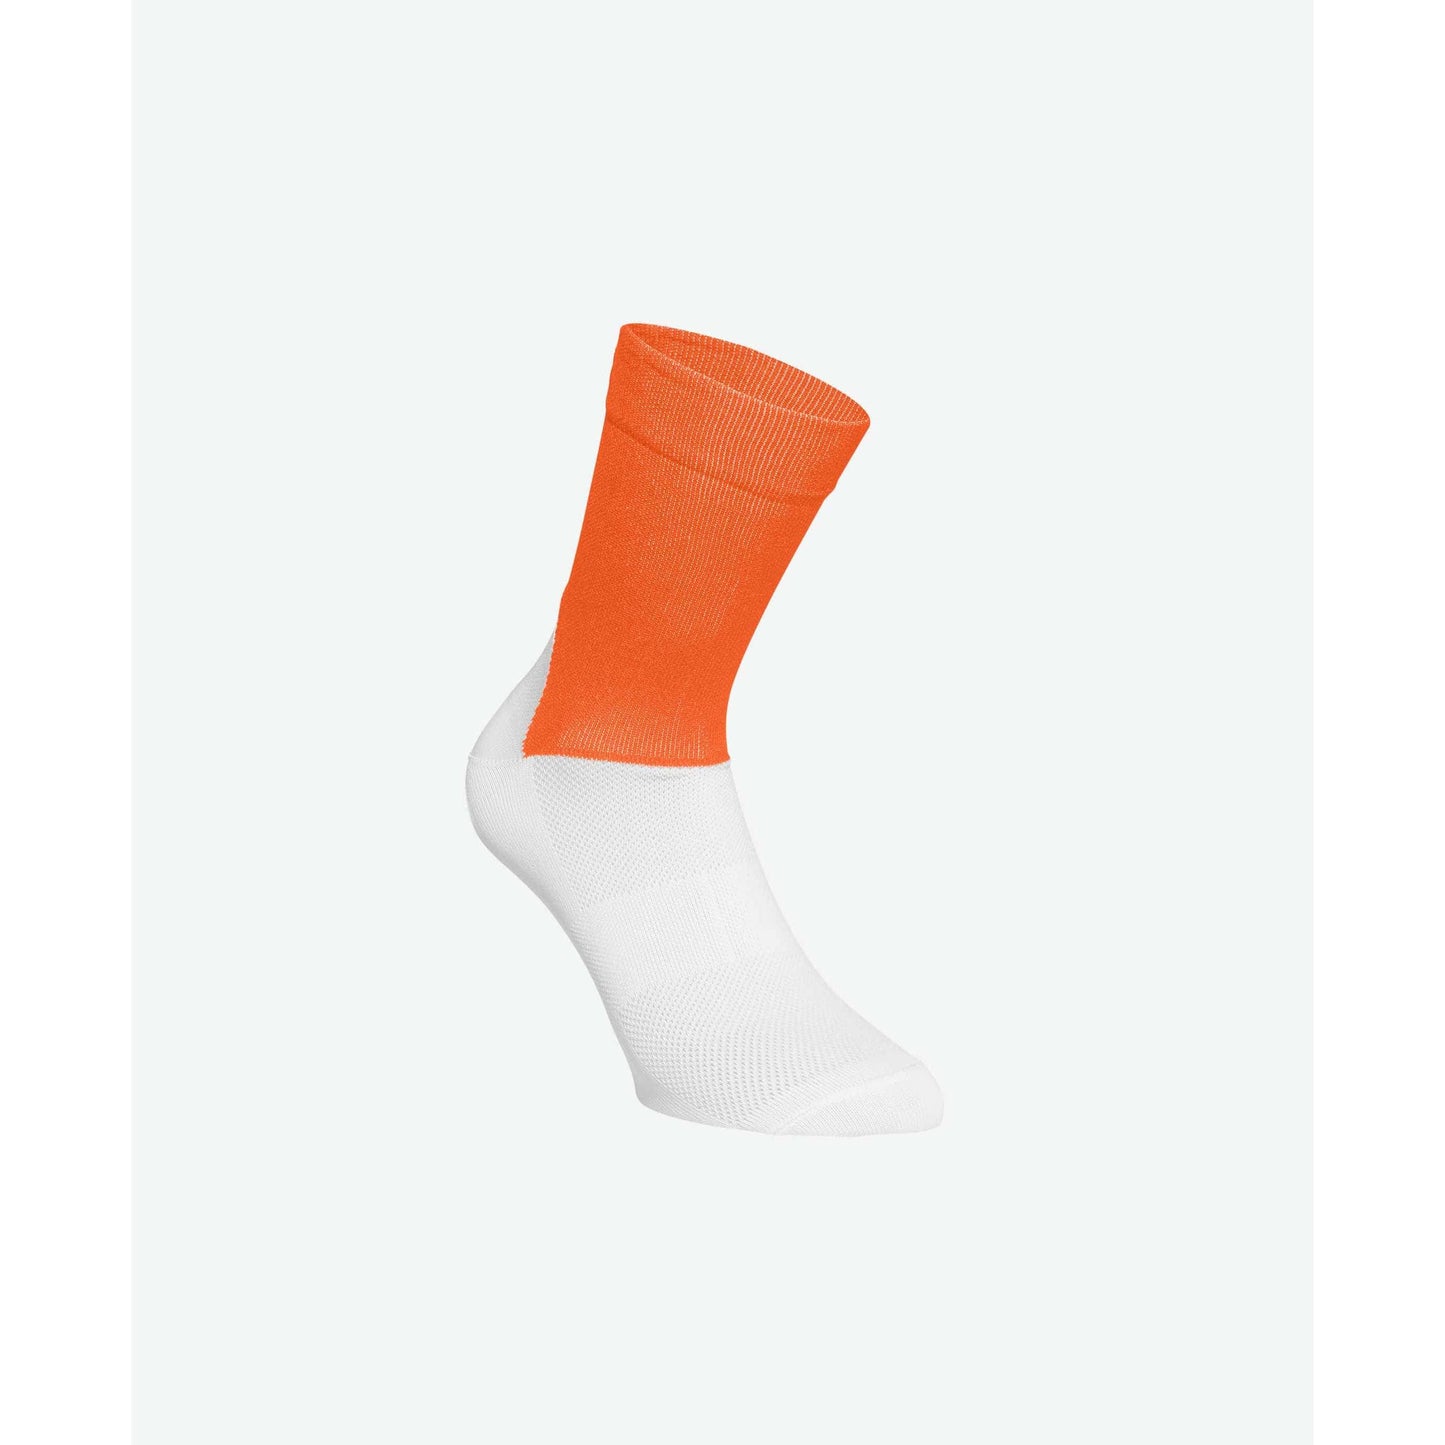 ソックス Essential Road Socks - Zink Orange/Hydrogen White [ユニセックス] 65110-8040 - STYLE BIKE ONLINE SHOP